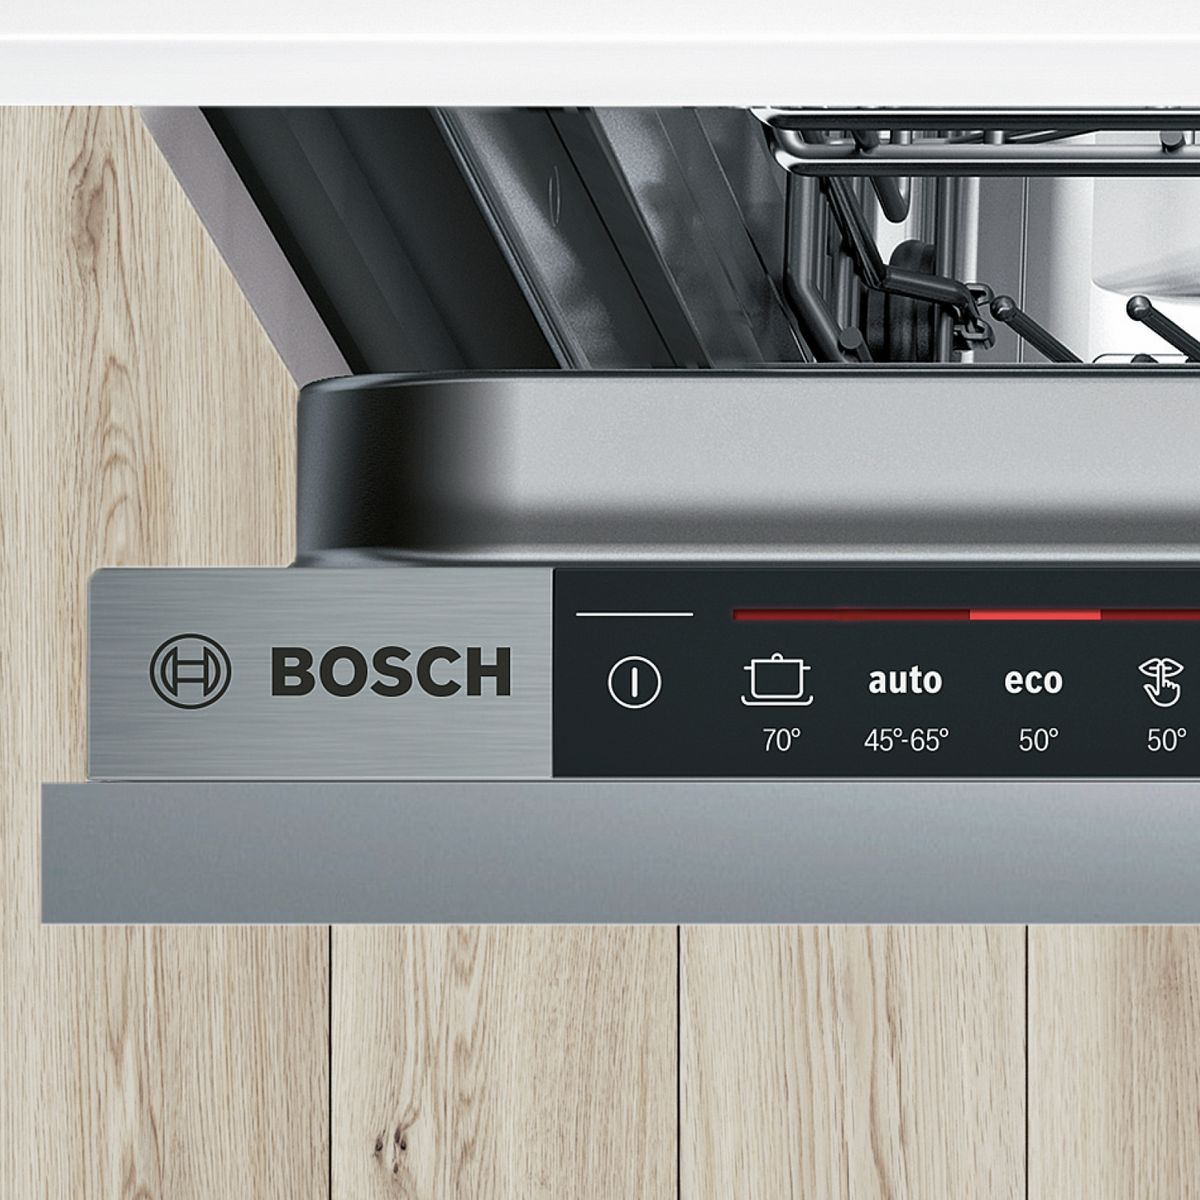 Посудомойка бош режимы. Посудомойка бош режим Eco. Sd6p1b Bosch. Посудомойка Bosch режим auto Eco. Посудомоечная машина бош режимы.